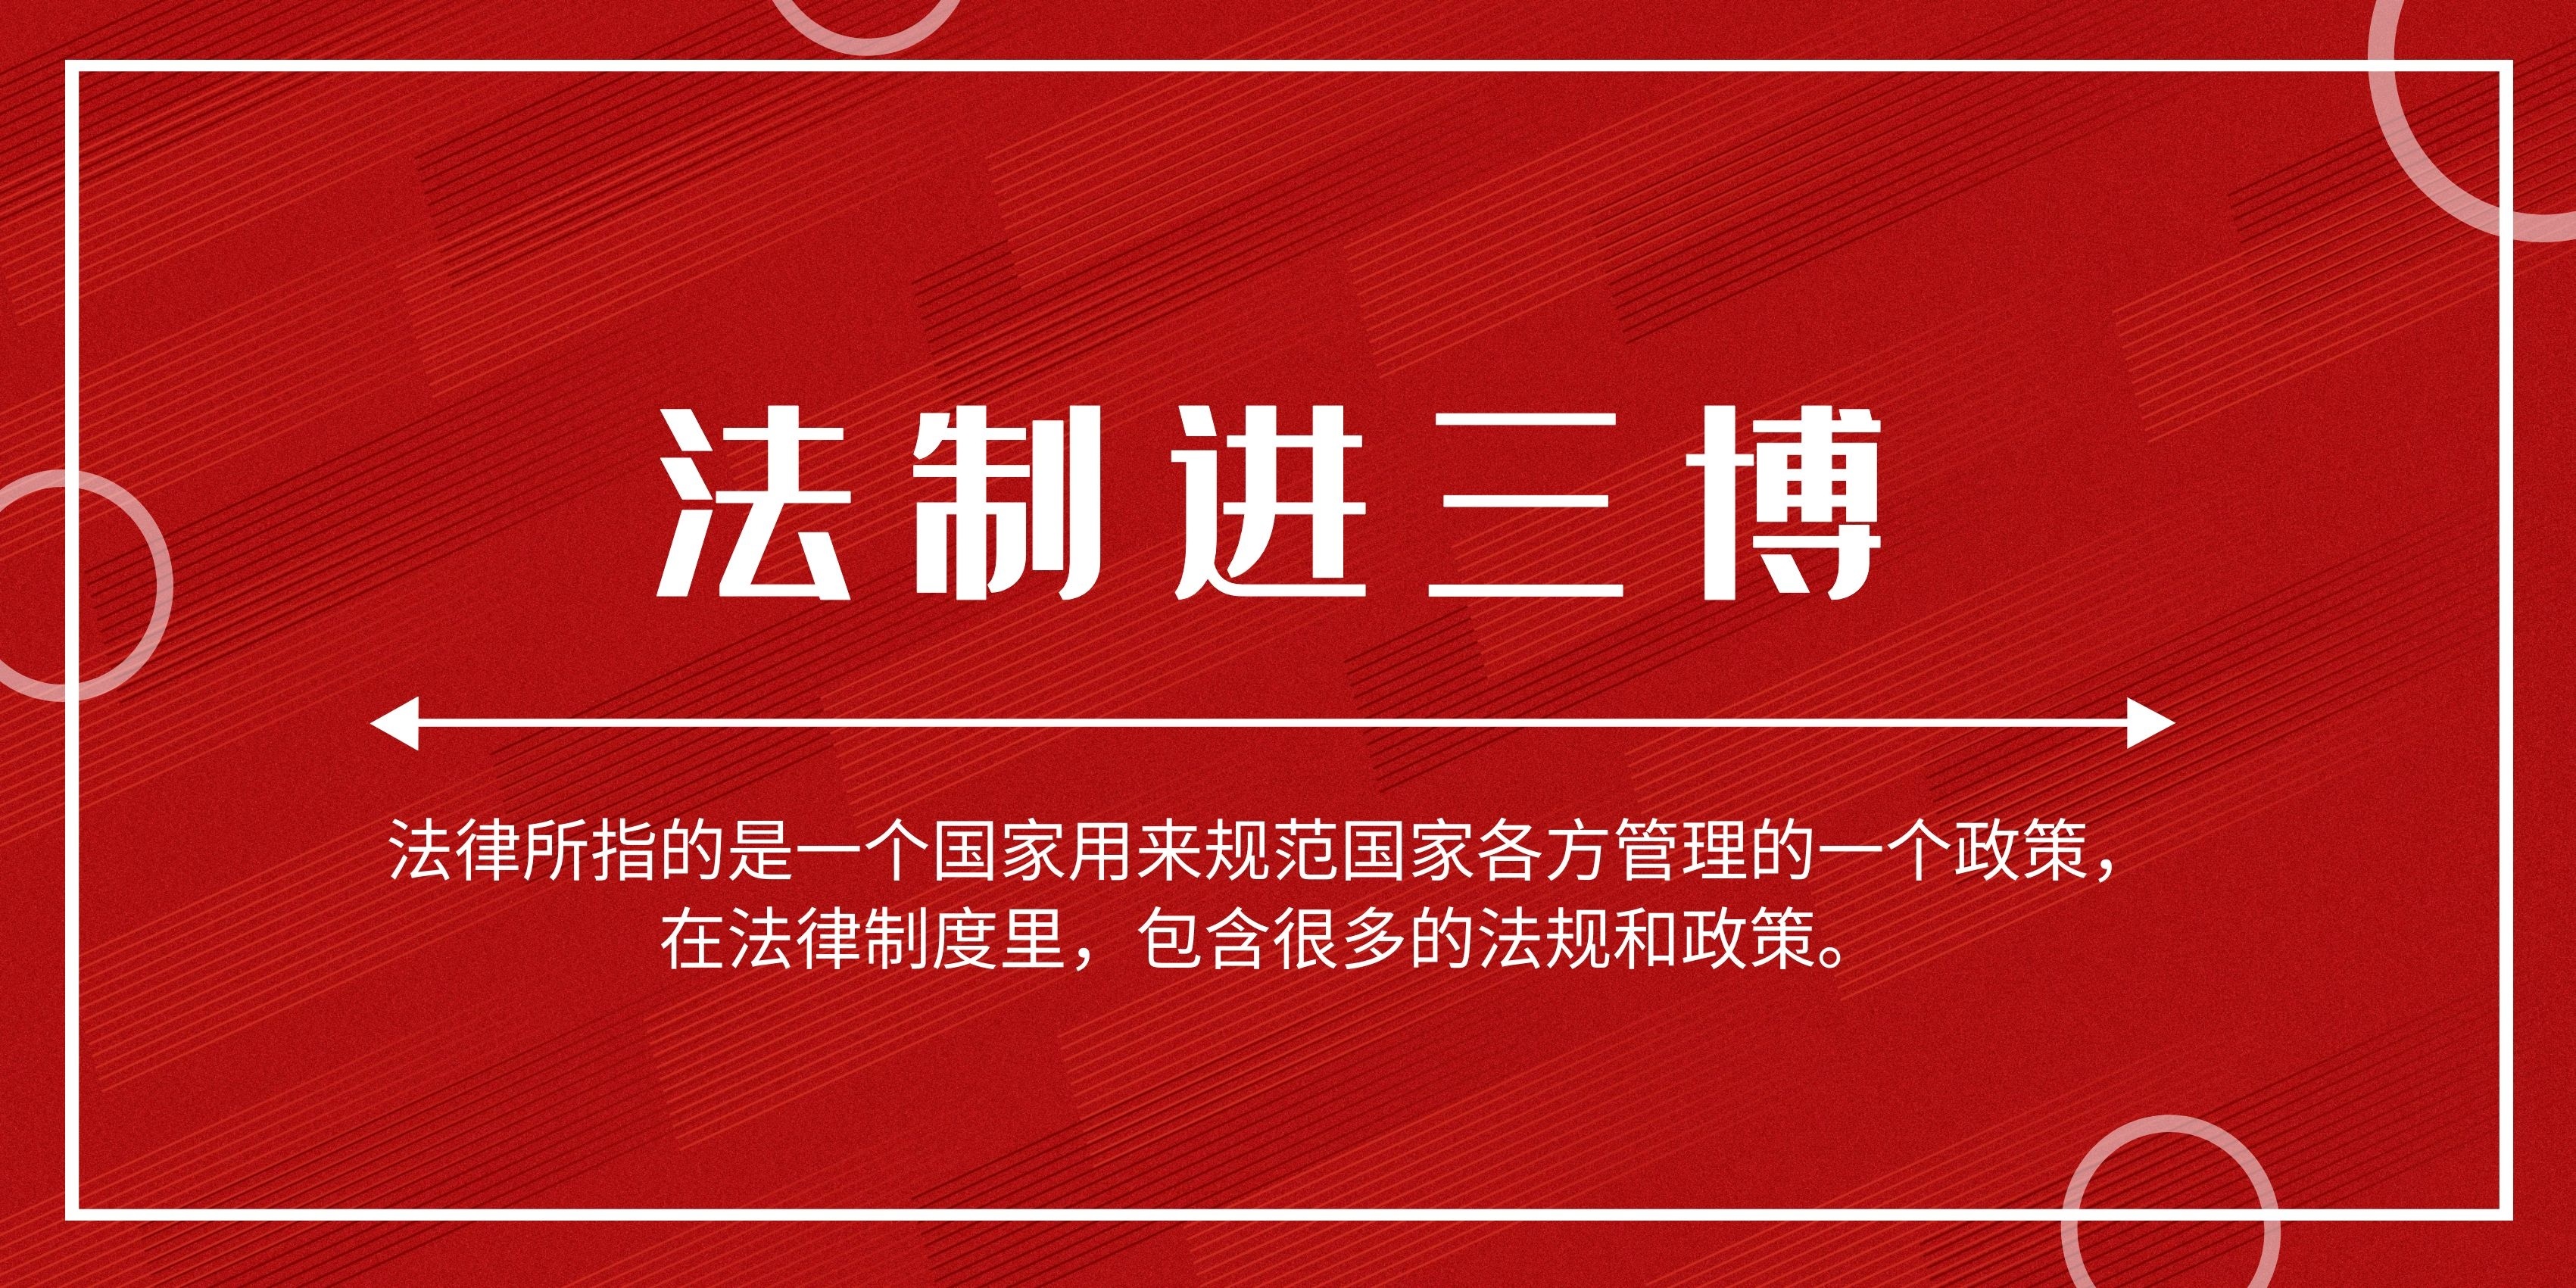 三明市博物馆2020年法制宣传教育年度工作计划